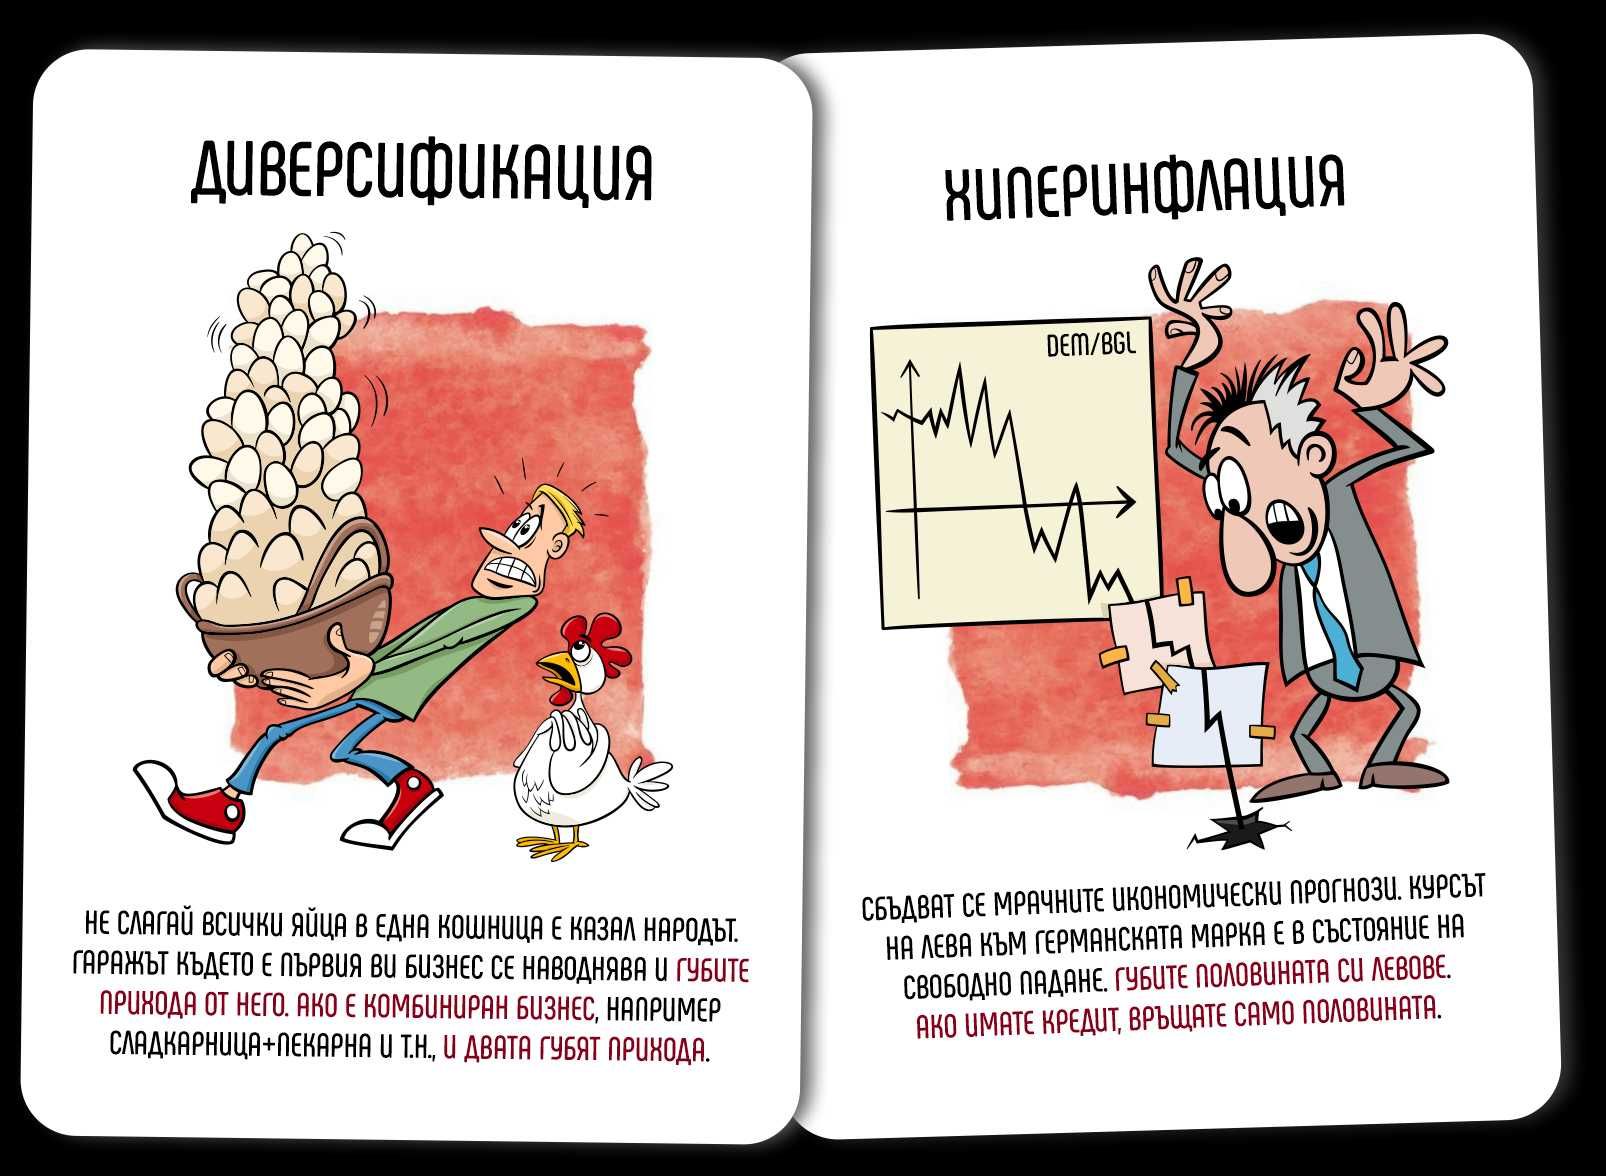 ПРЕХОДА - игра с карти за мечти, кризи и оцеляване в демокрацията